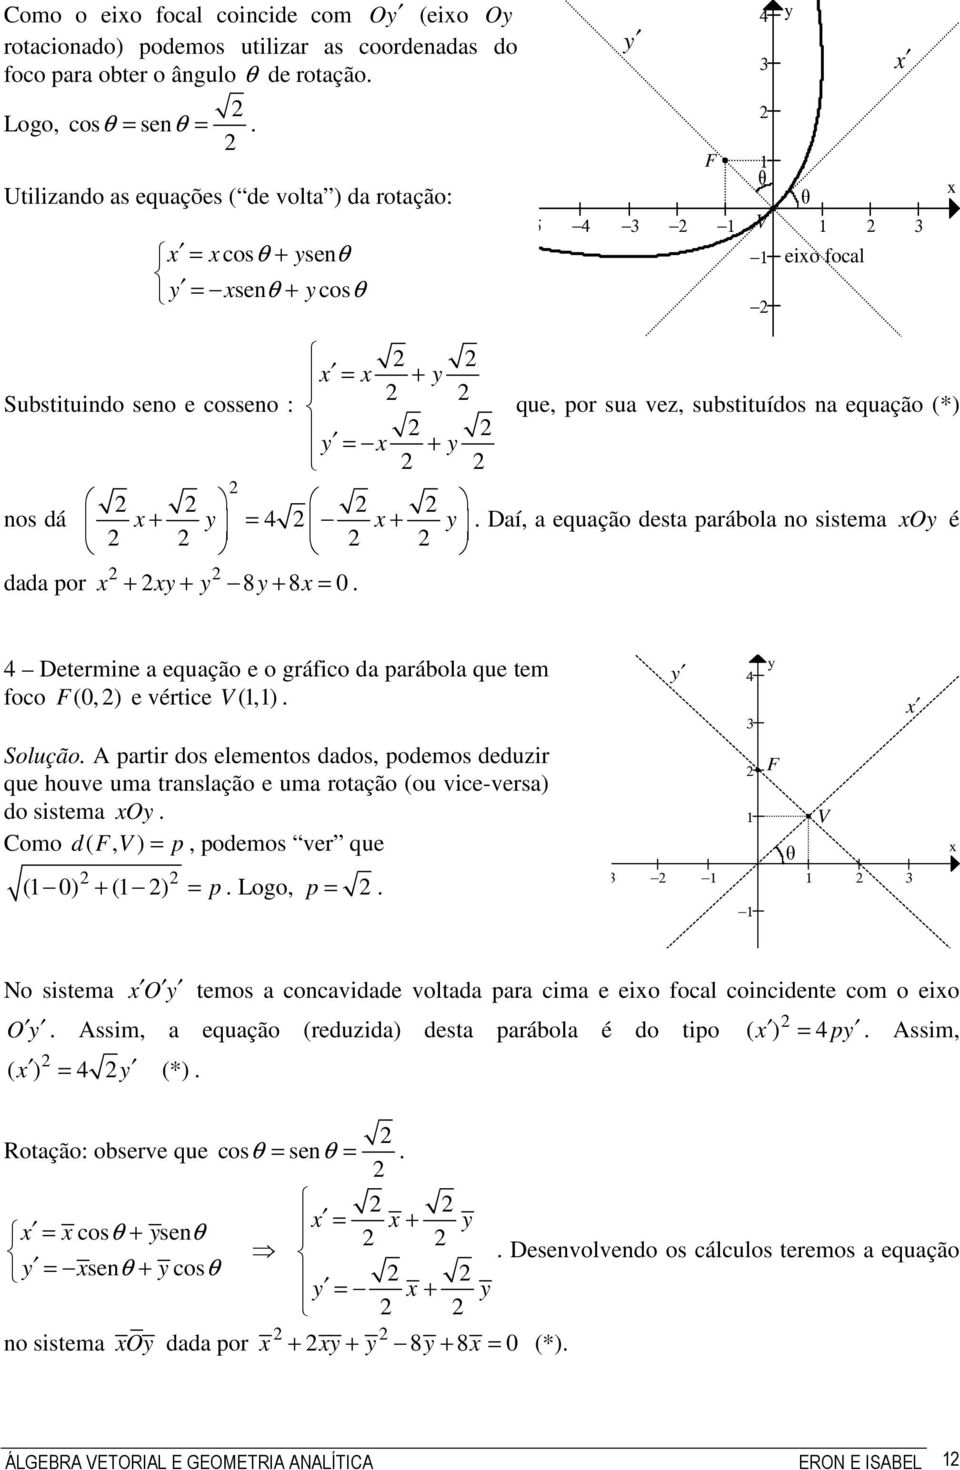 = 0 Determine a equação e o gráfico da parábola que tem foco F (0, ) e vértice V (,) Solução A partir dos elementos dados, podemos deduzir que houve uma translação e uma rotação (ou vice-versa) do